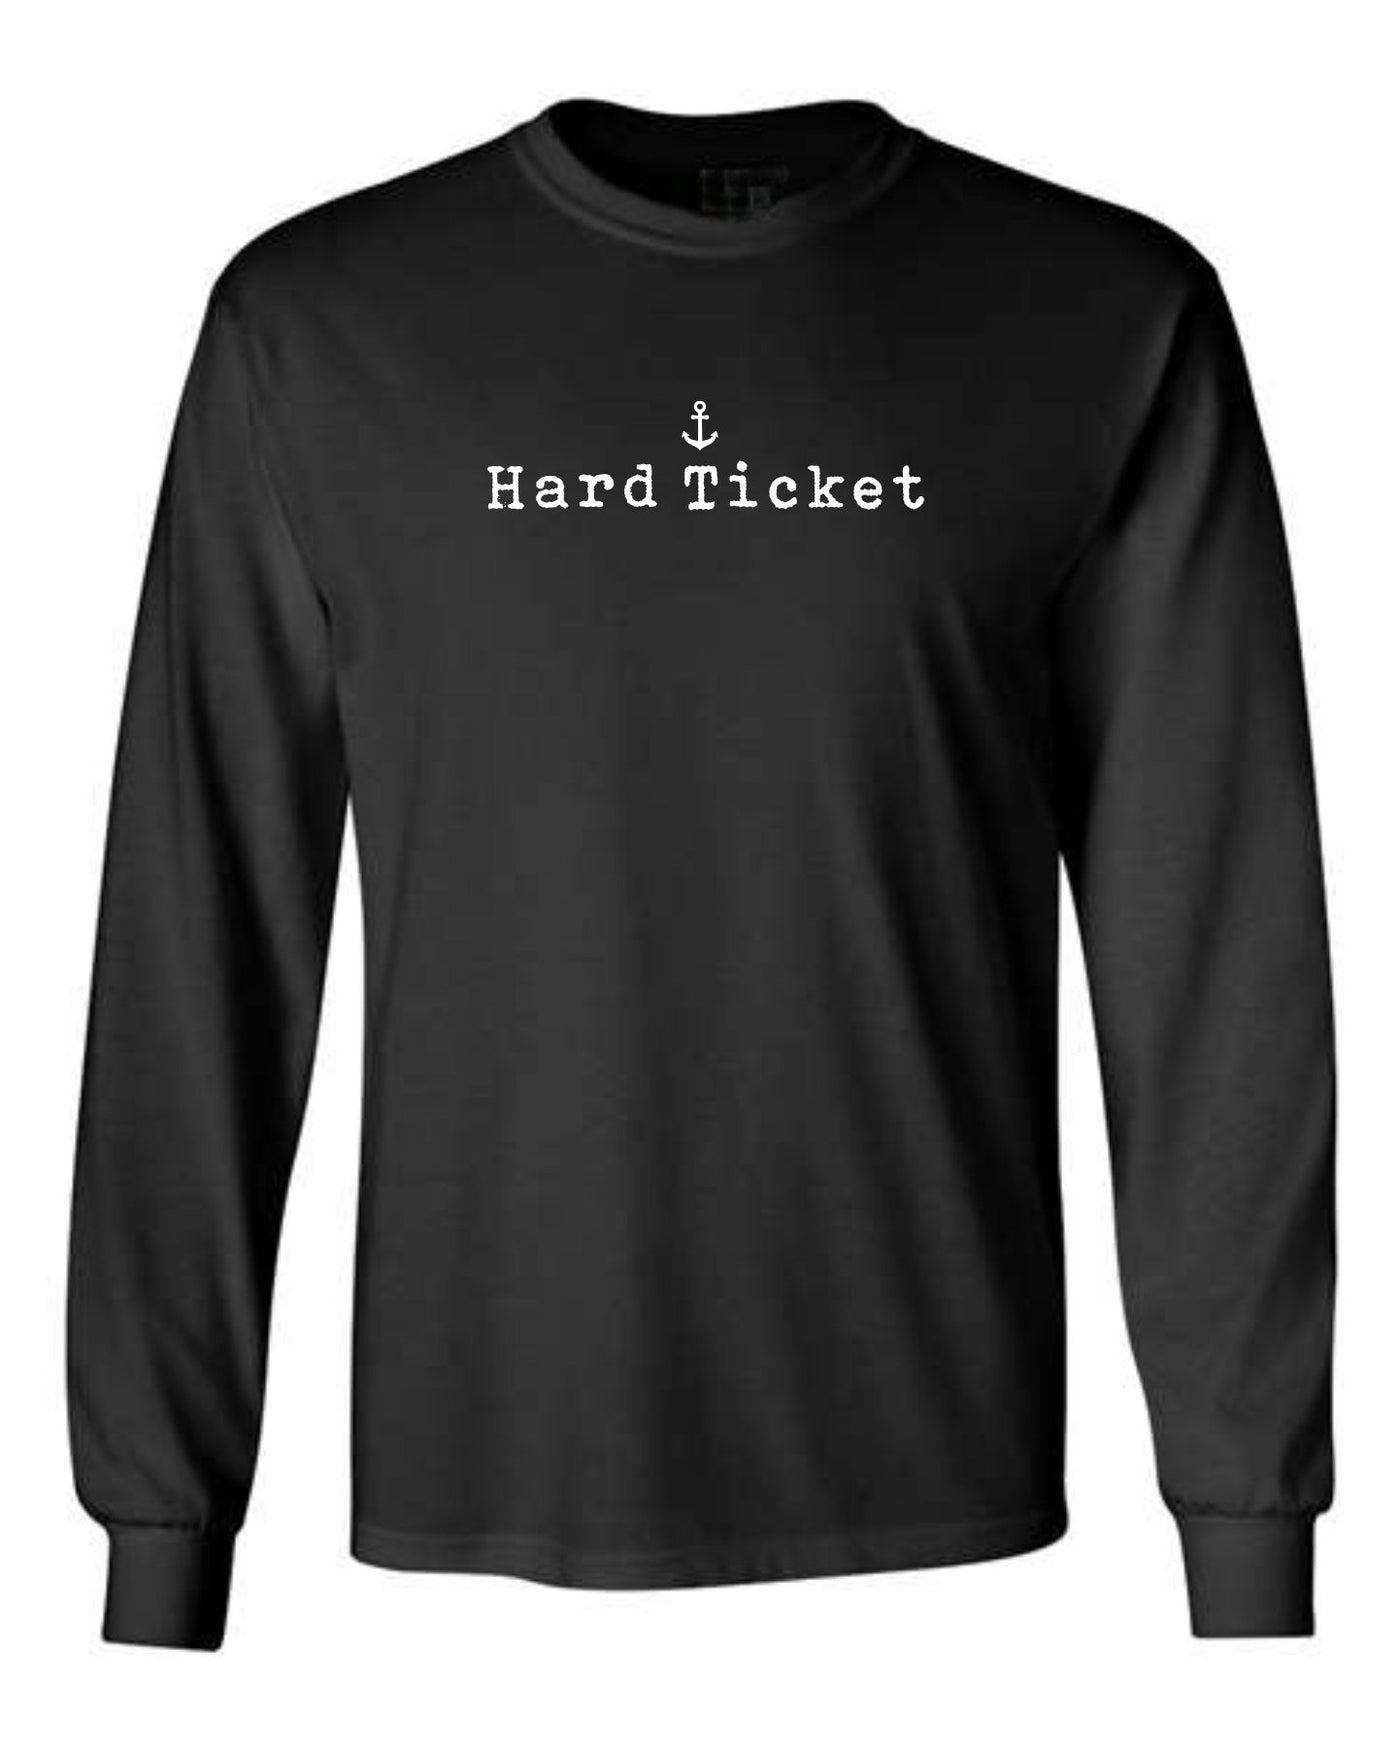 "Hard Ticket" Unisex Long Sleeve Shirt